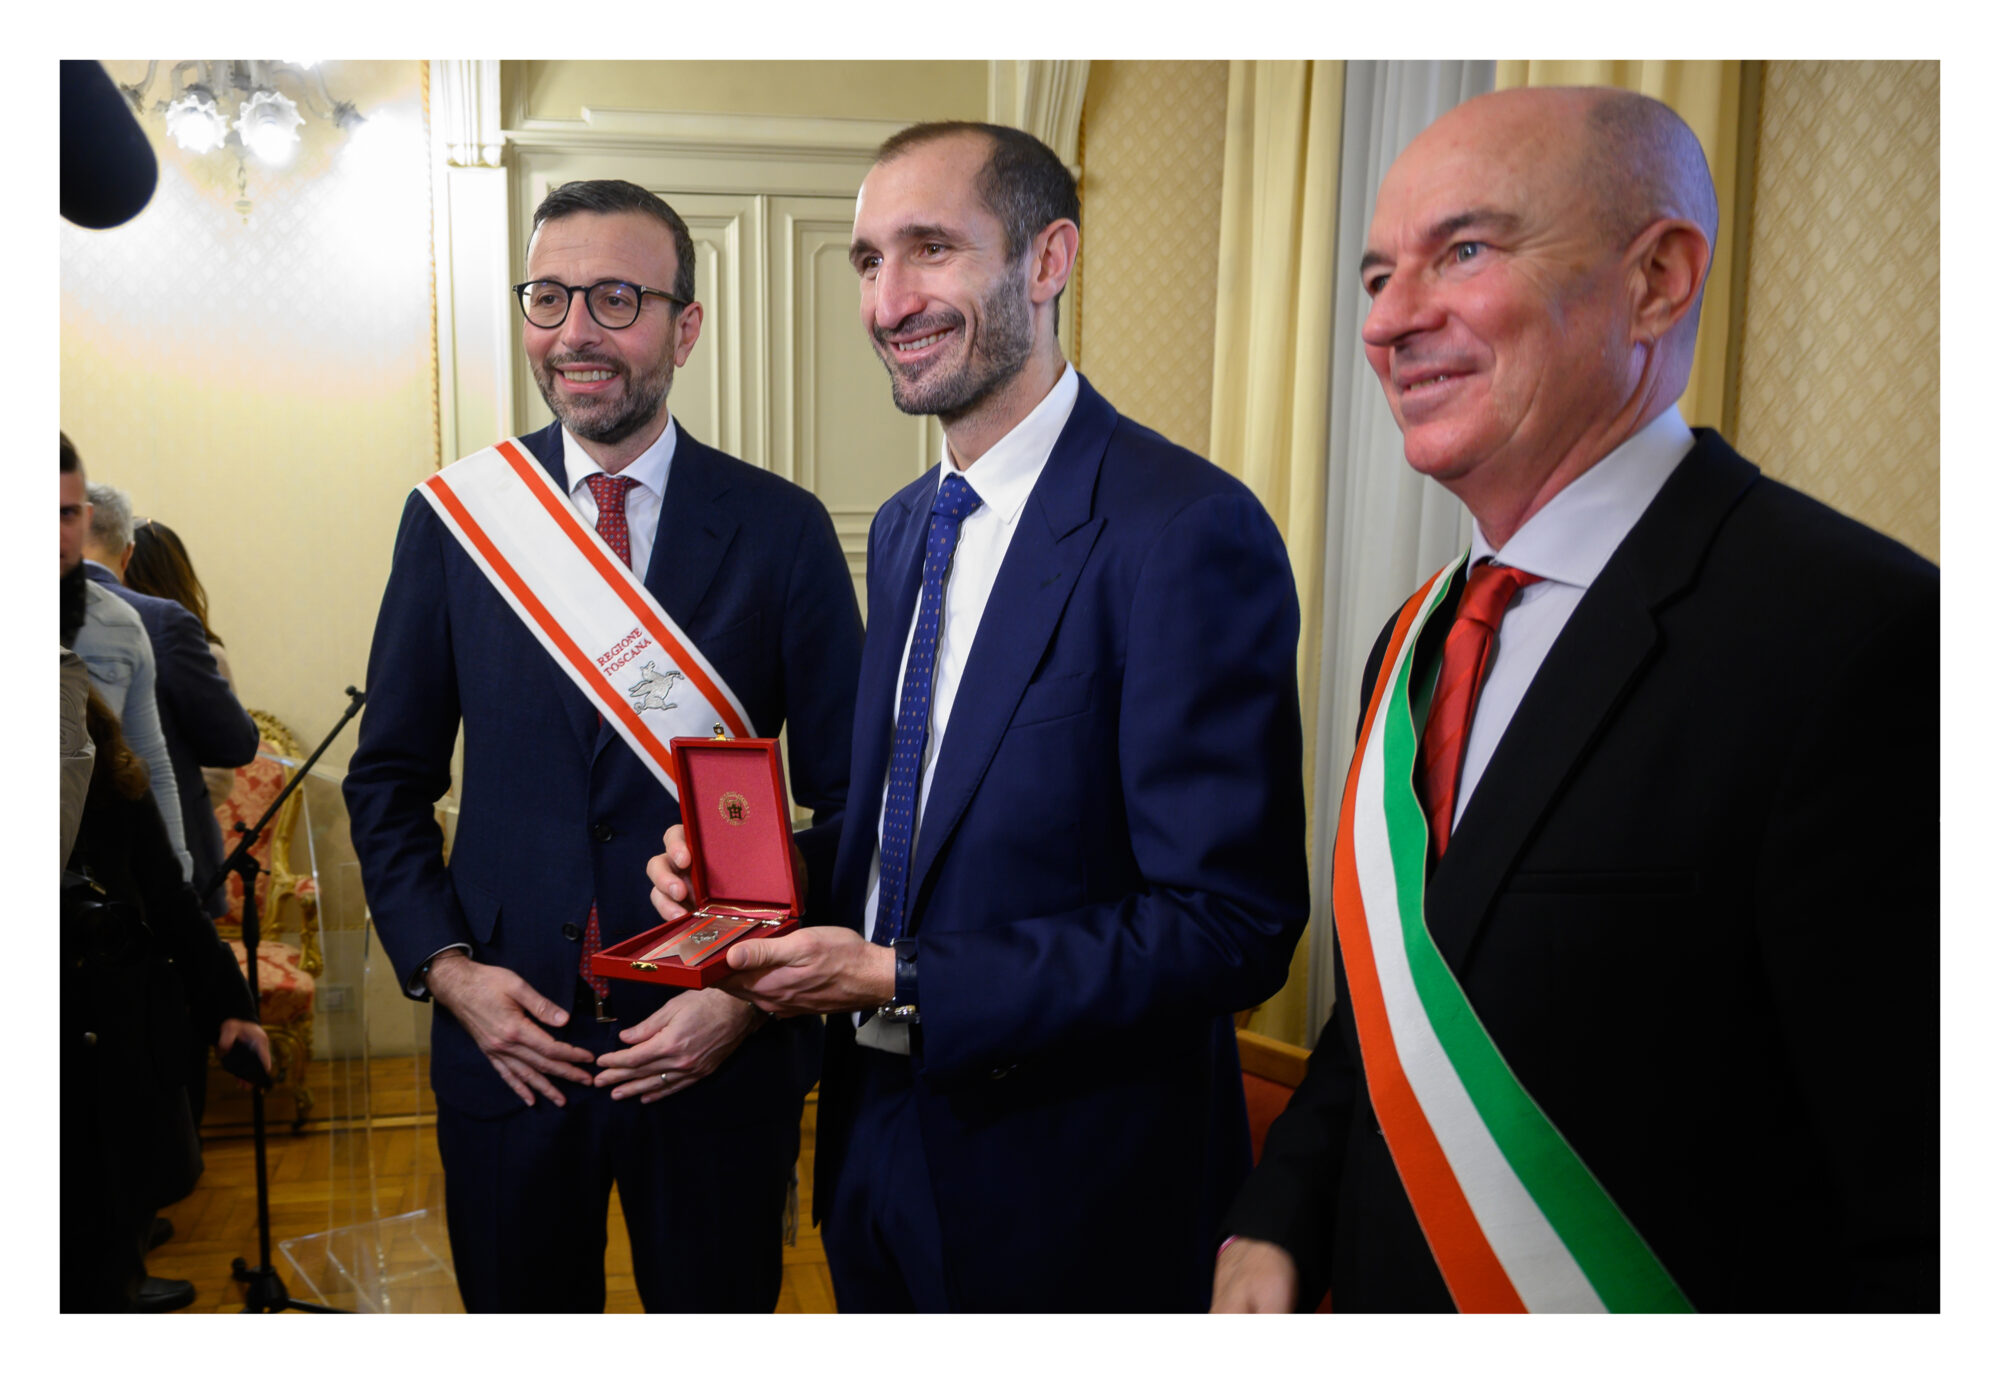 Giorgio Chiellini riceve il Gonfalone d’argento